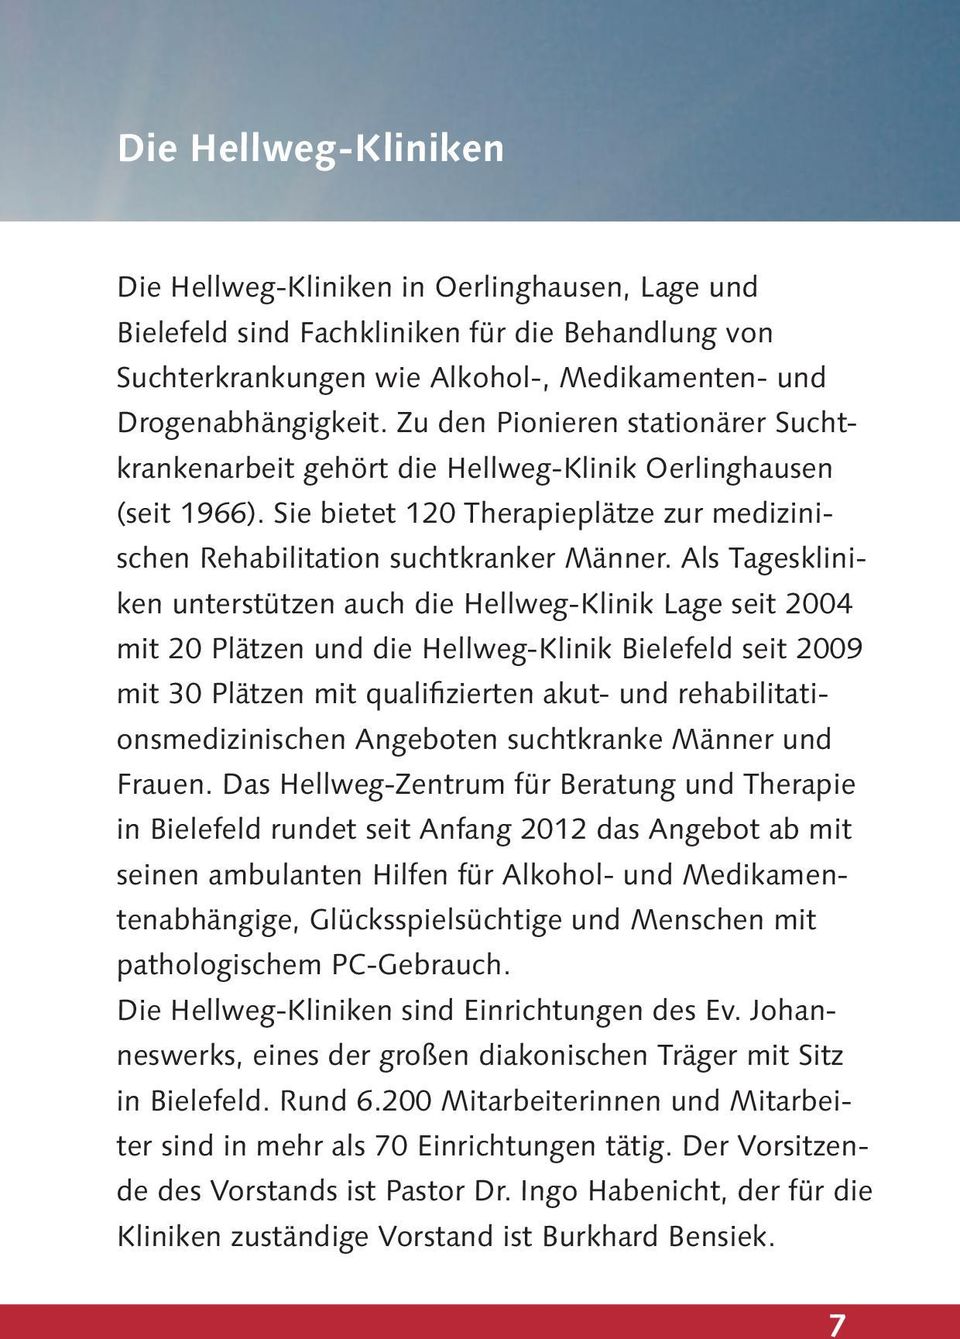 Als Tageskliniken unterstützen auch die Hellweg-Klinik Lage seit 2004 mit 20 Plätzen und die Hellweg-Klinik Bielefeld seit 2009 mit 30 Plätzen mit qualifizierten akut- und